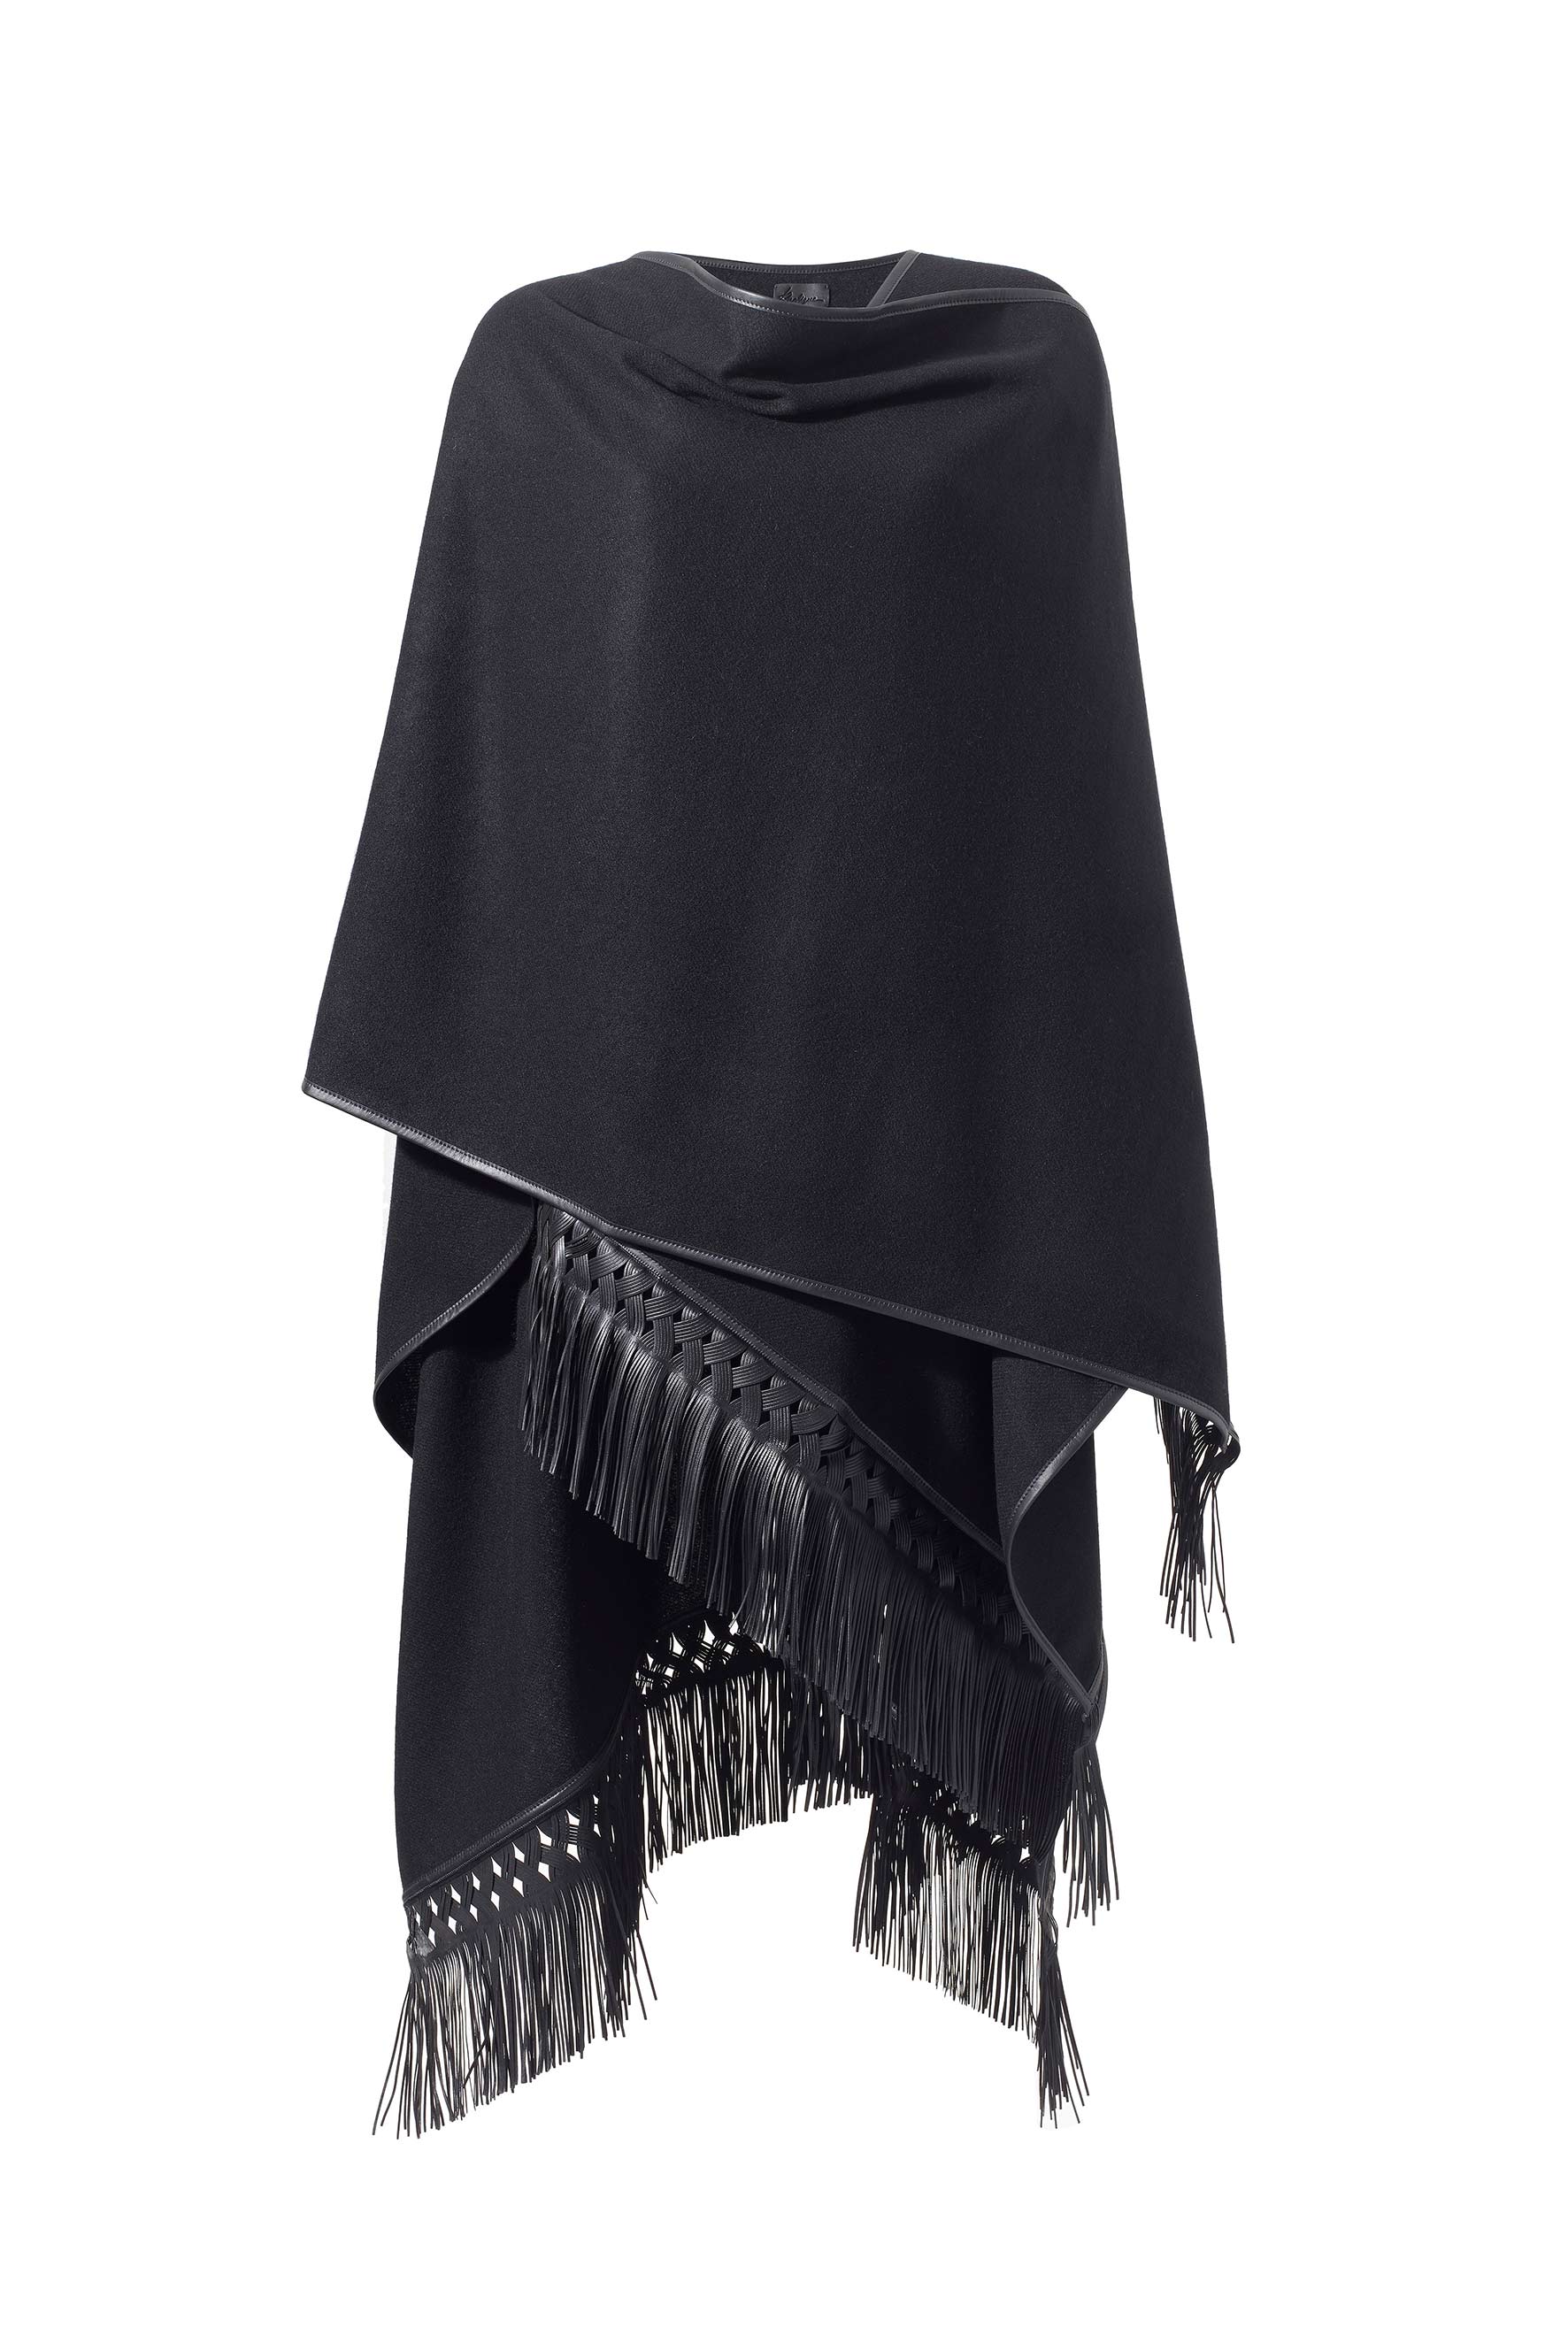 Women’s Cashmere Cape With Braided Leather Fringe - Black Medium Fameed Khalique Ltd